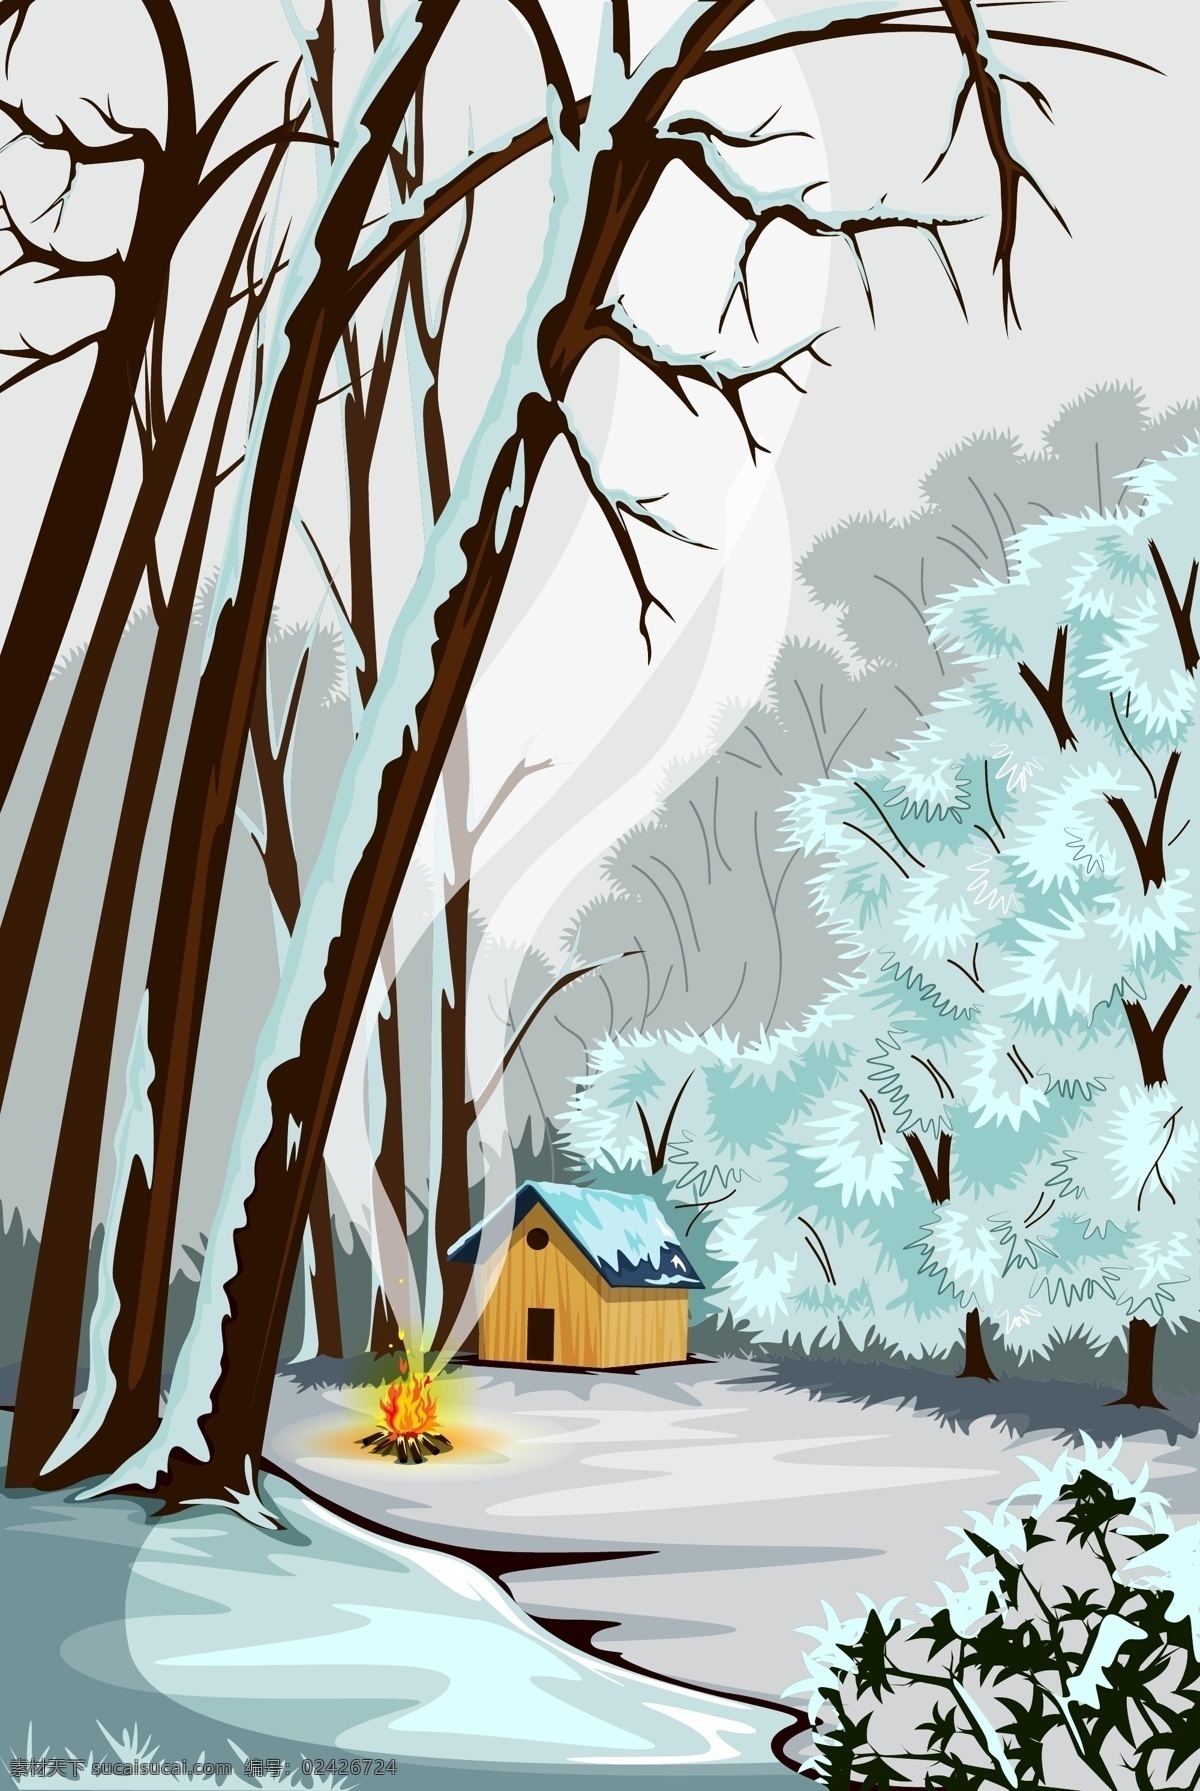 冬天 森林 里 小屋 插画 雪景 火堆 风景 大树 下雪